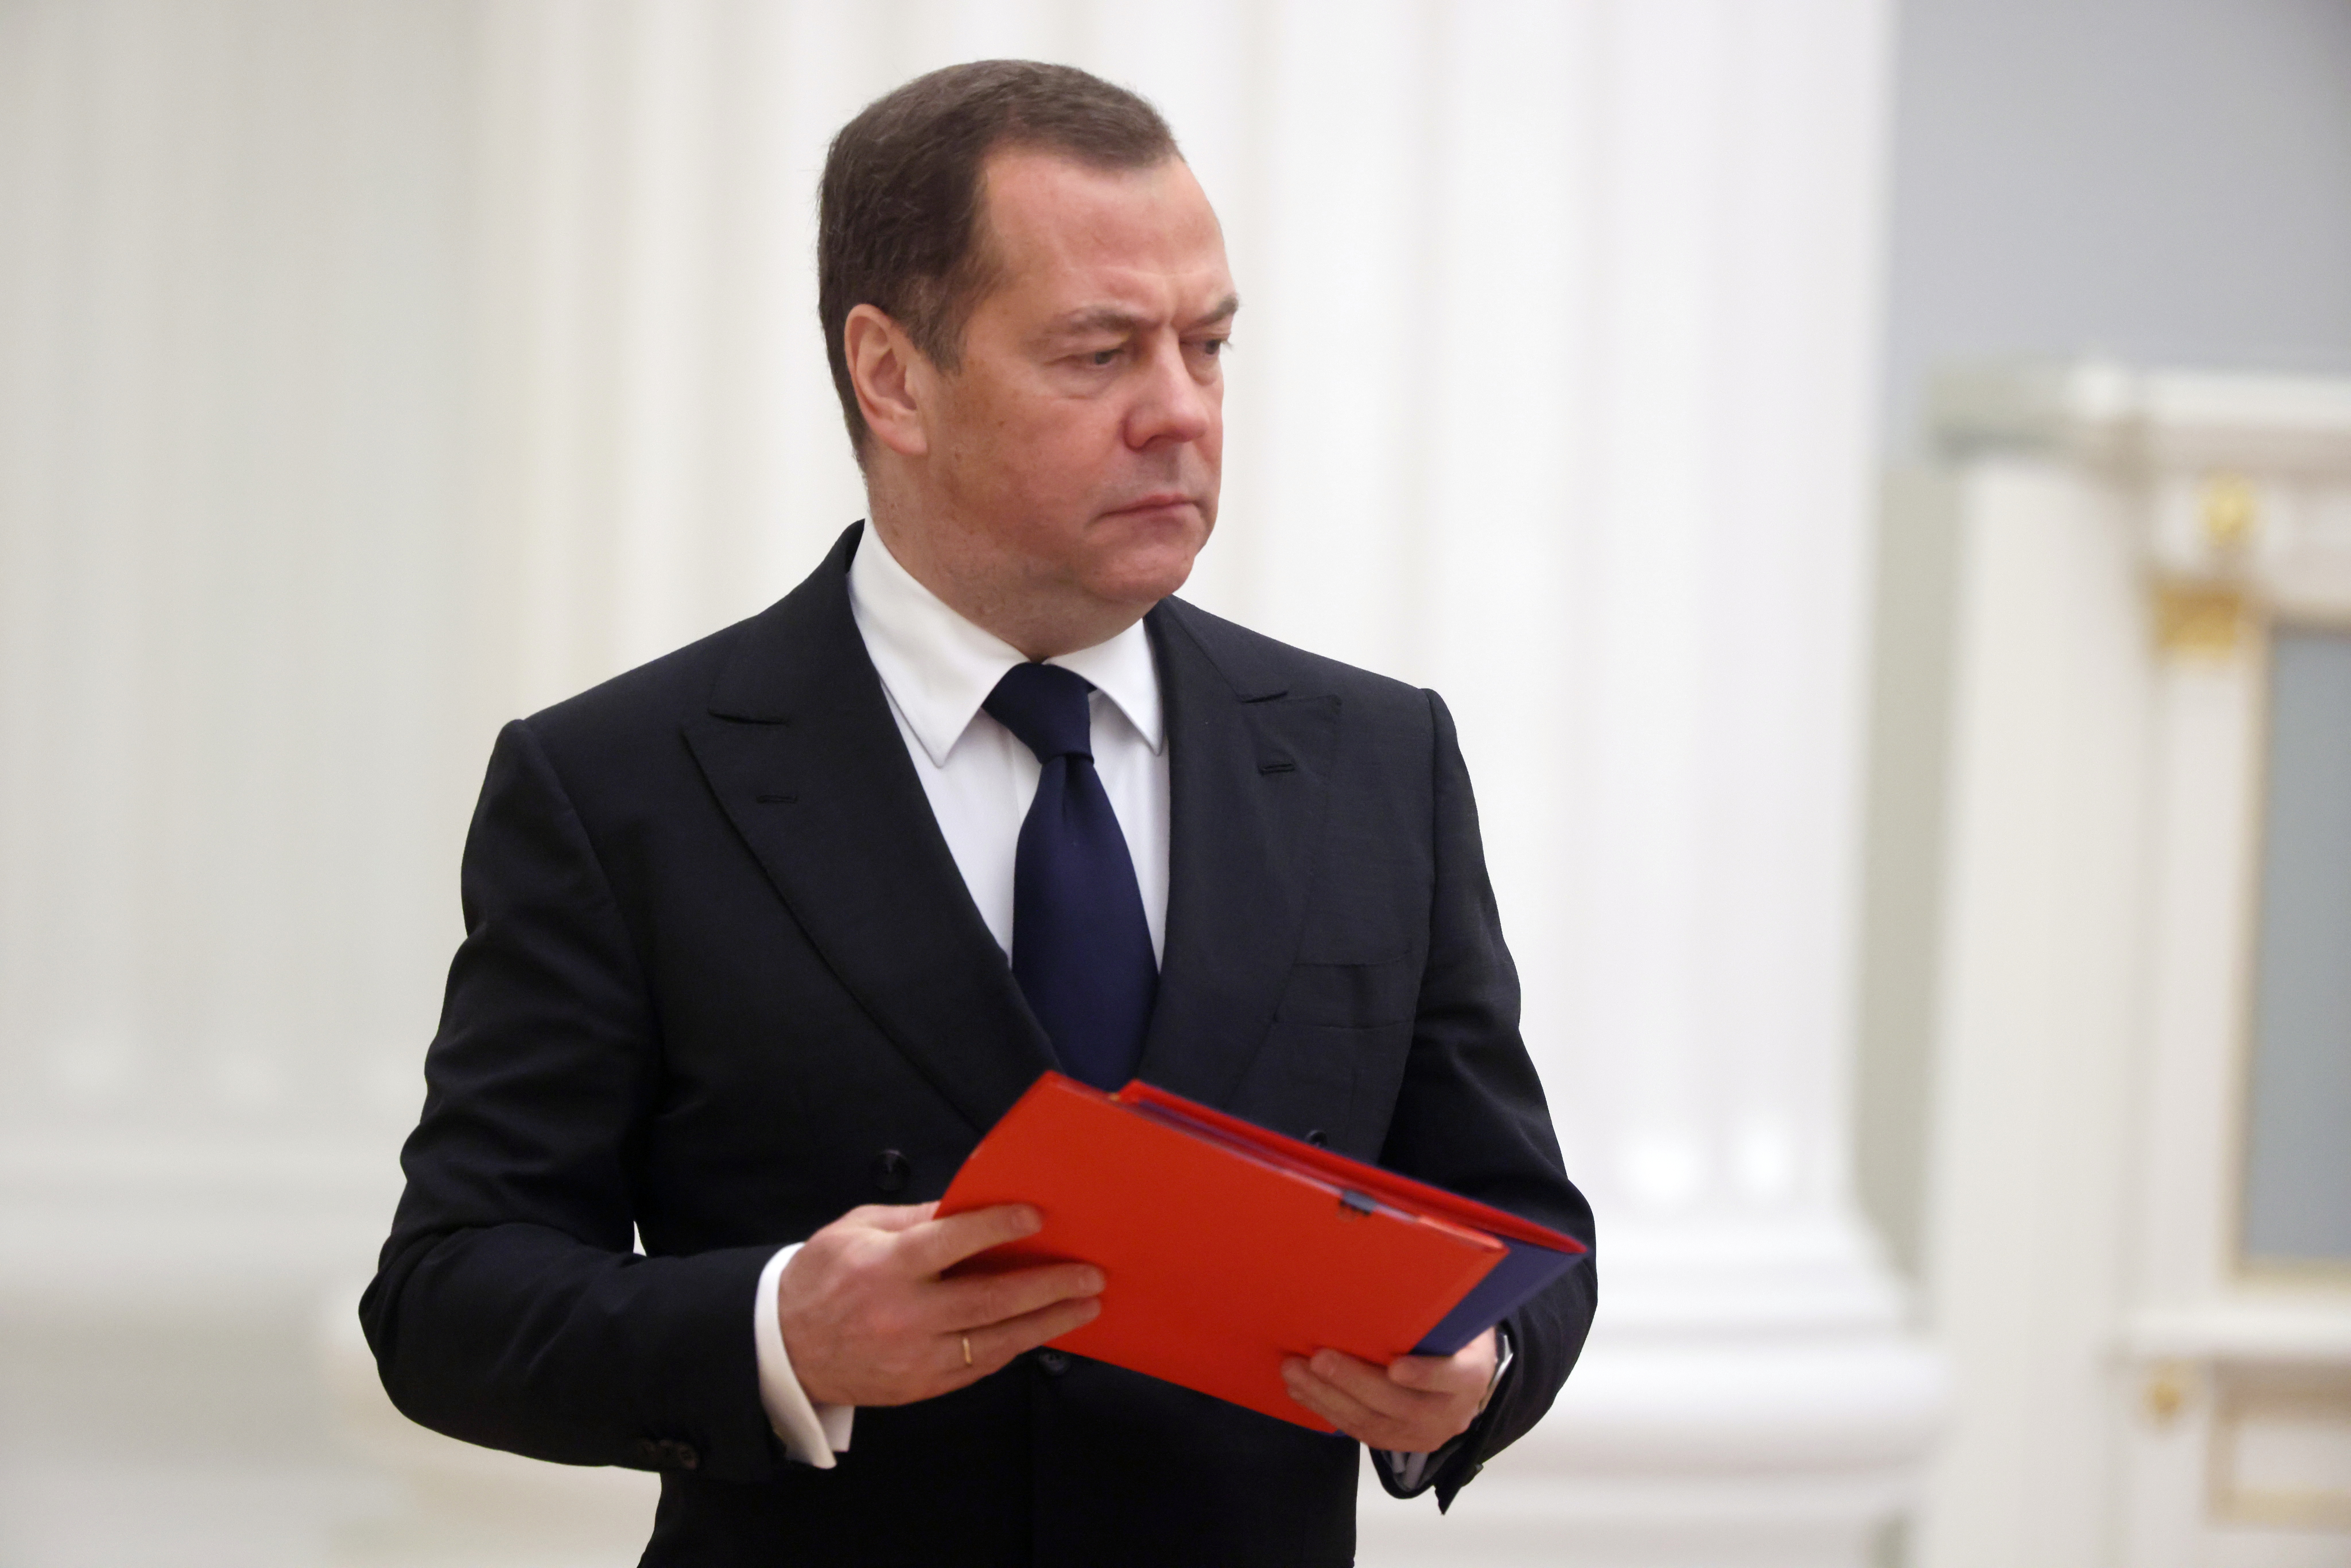 Medvedev: Približavamo se nuklearnoj apokalipsi